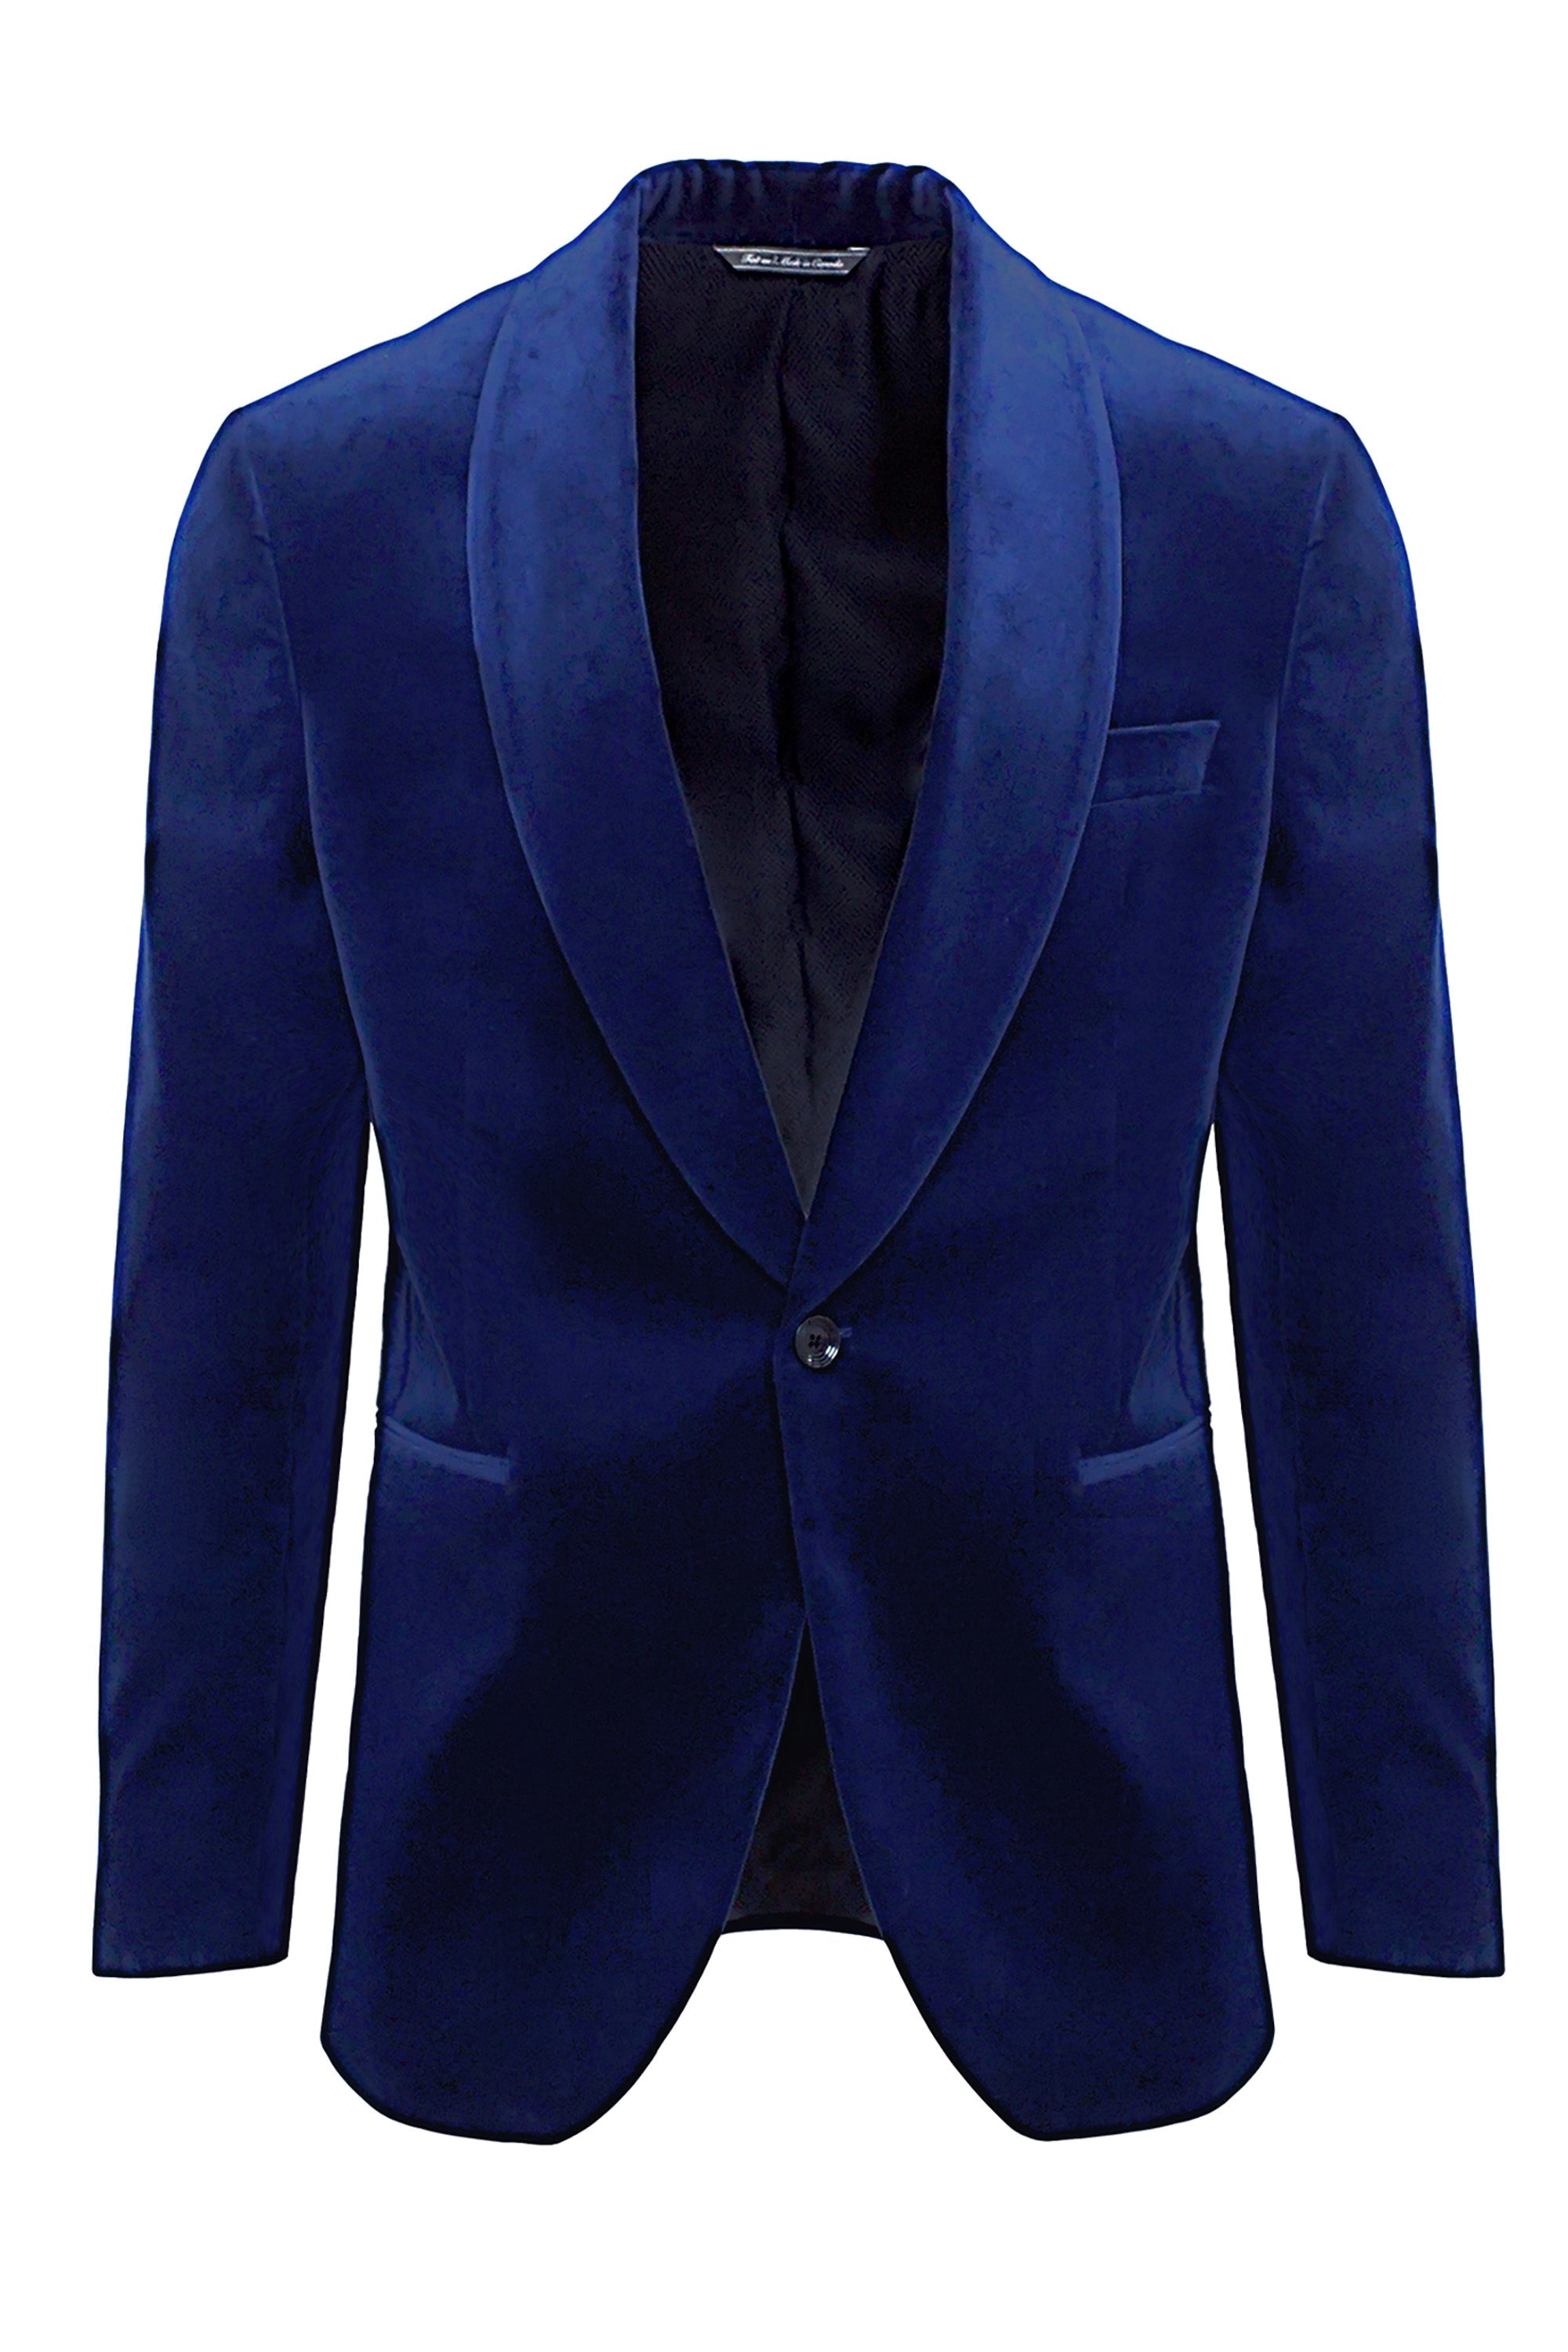 Blue Velvet Edison Shawl Collar Dinner Jacket